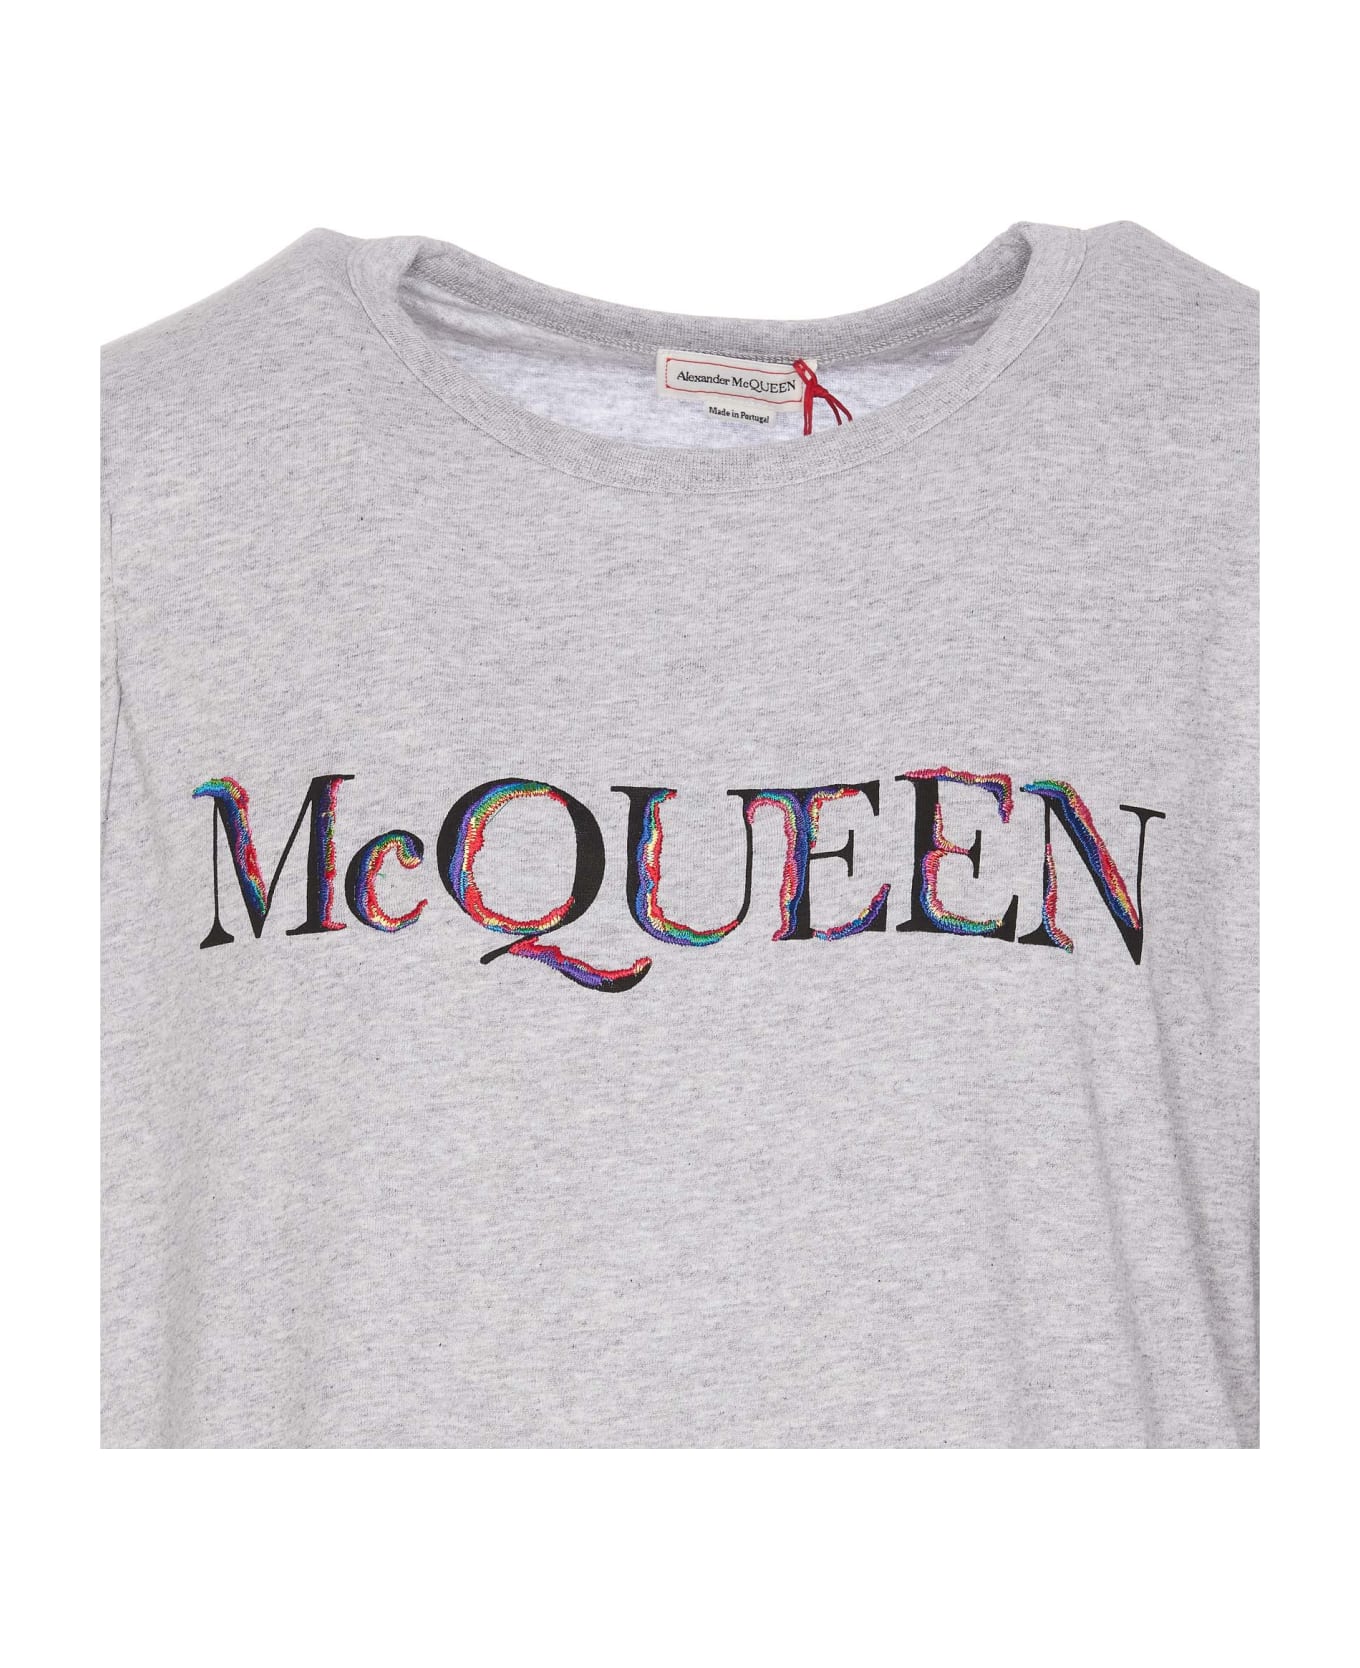 Alexander McQueen T-shirt With Logo - Light Pale Grey Mix